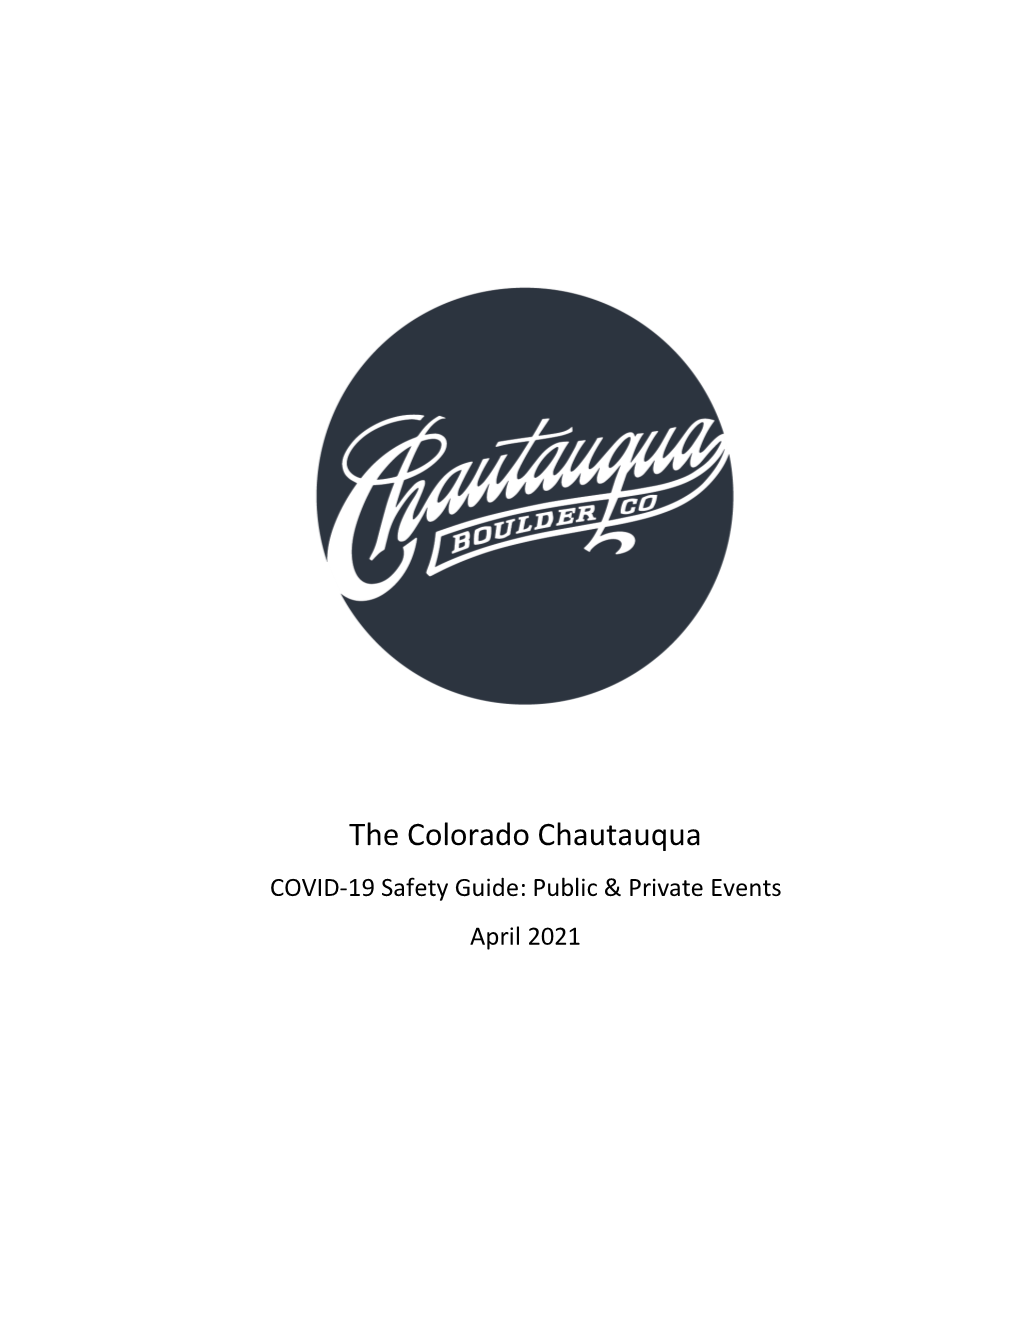 The Colorado Chautauqua COVID-19 Safety Guide: Public & Private Events April 2021